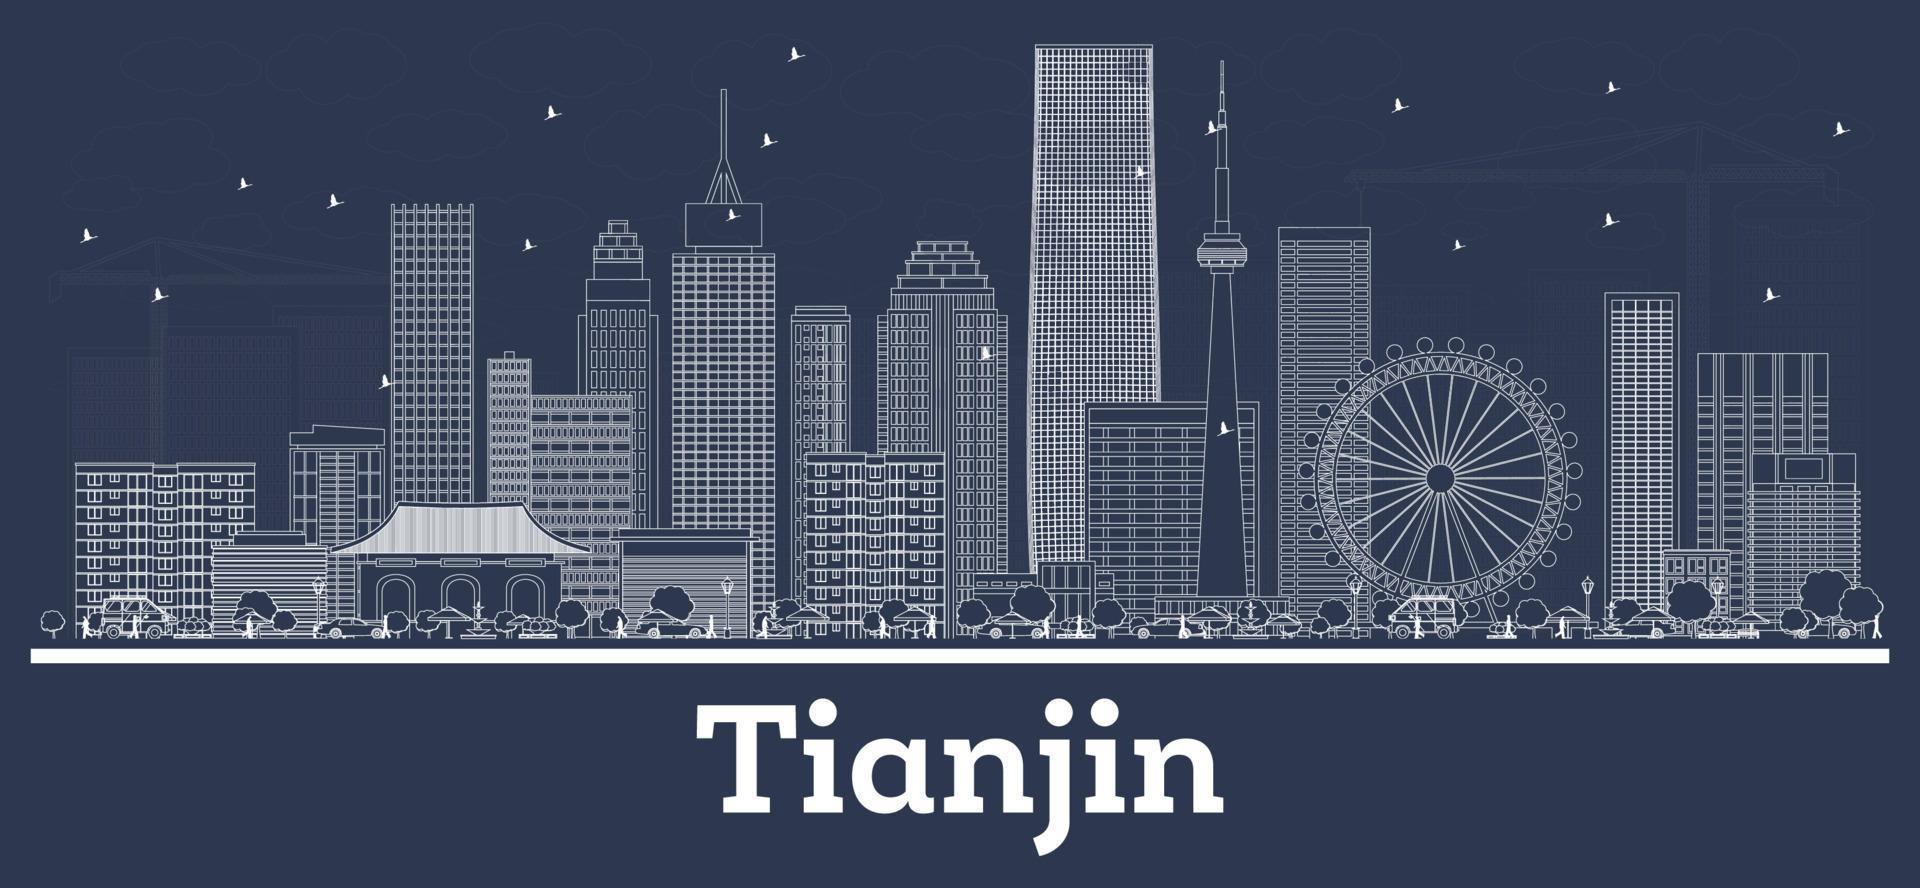 delineie o horizonte da cidade de tianjin china com edifícios brancos. vetor